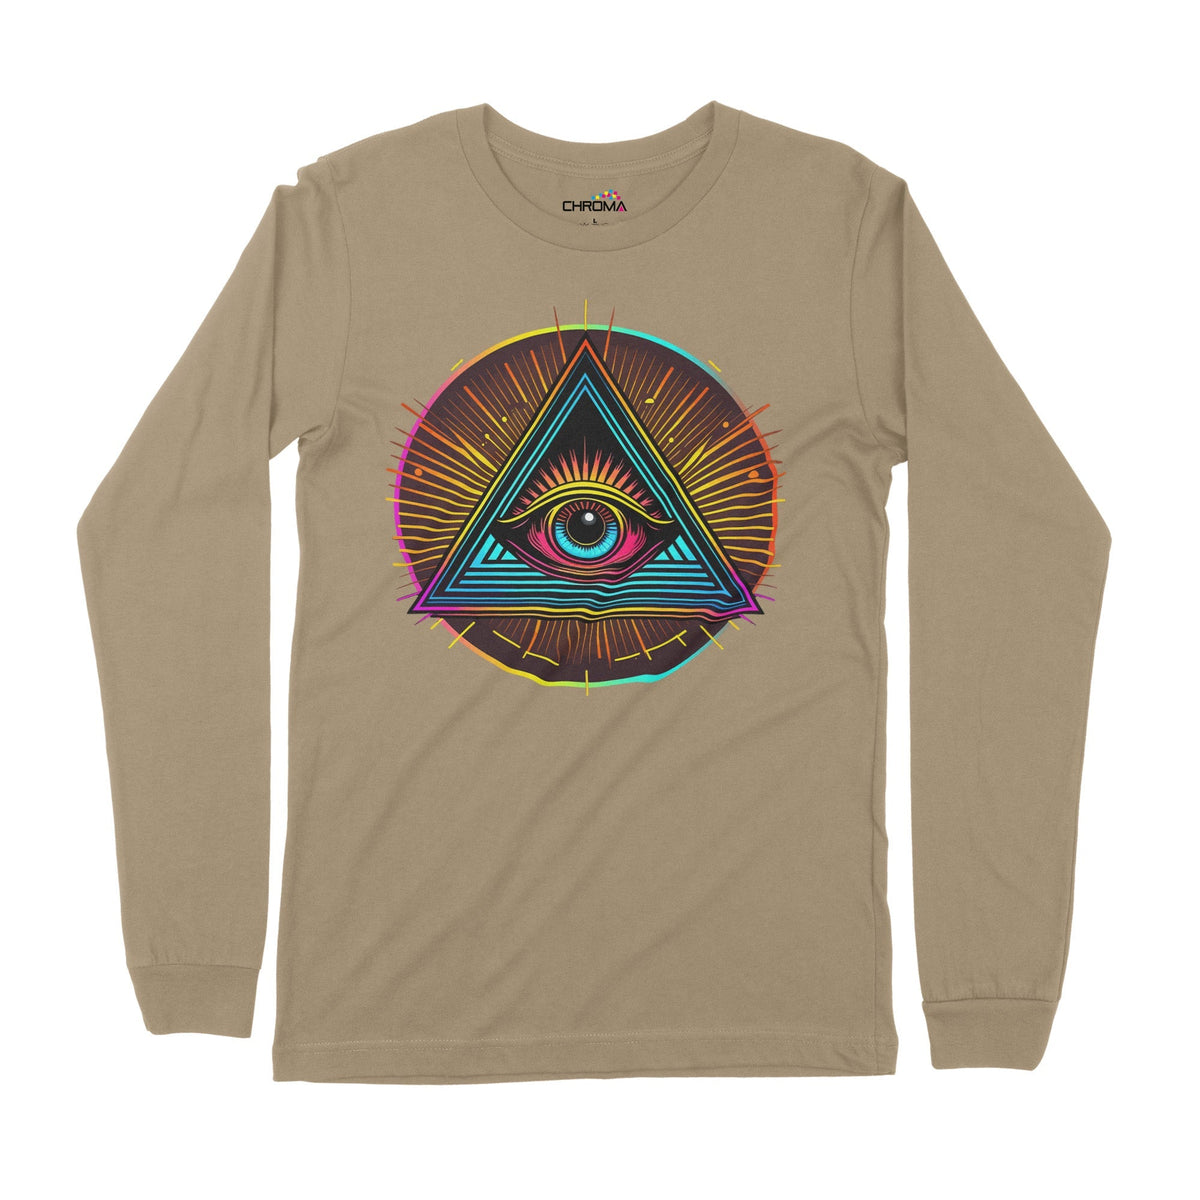 Illuminati Eye Of God | Long-Sleeve T-Shirt | Premium Quality Streetwe Chroma Clothing